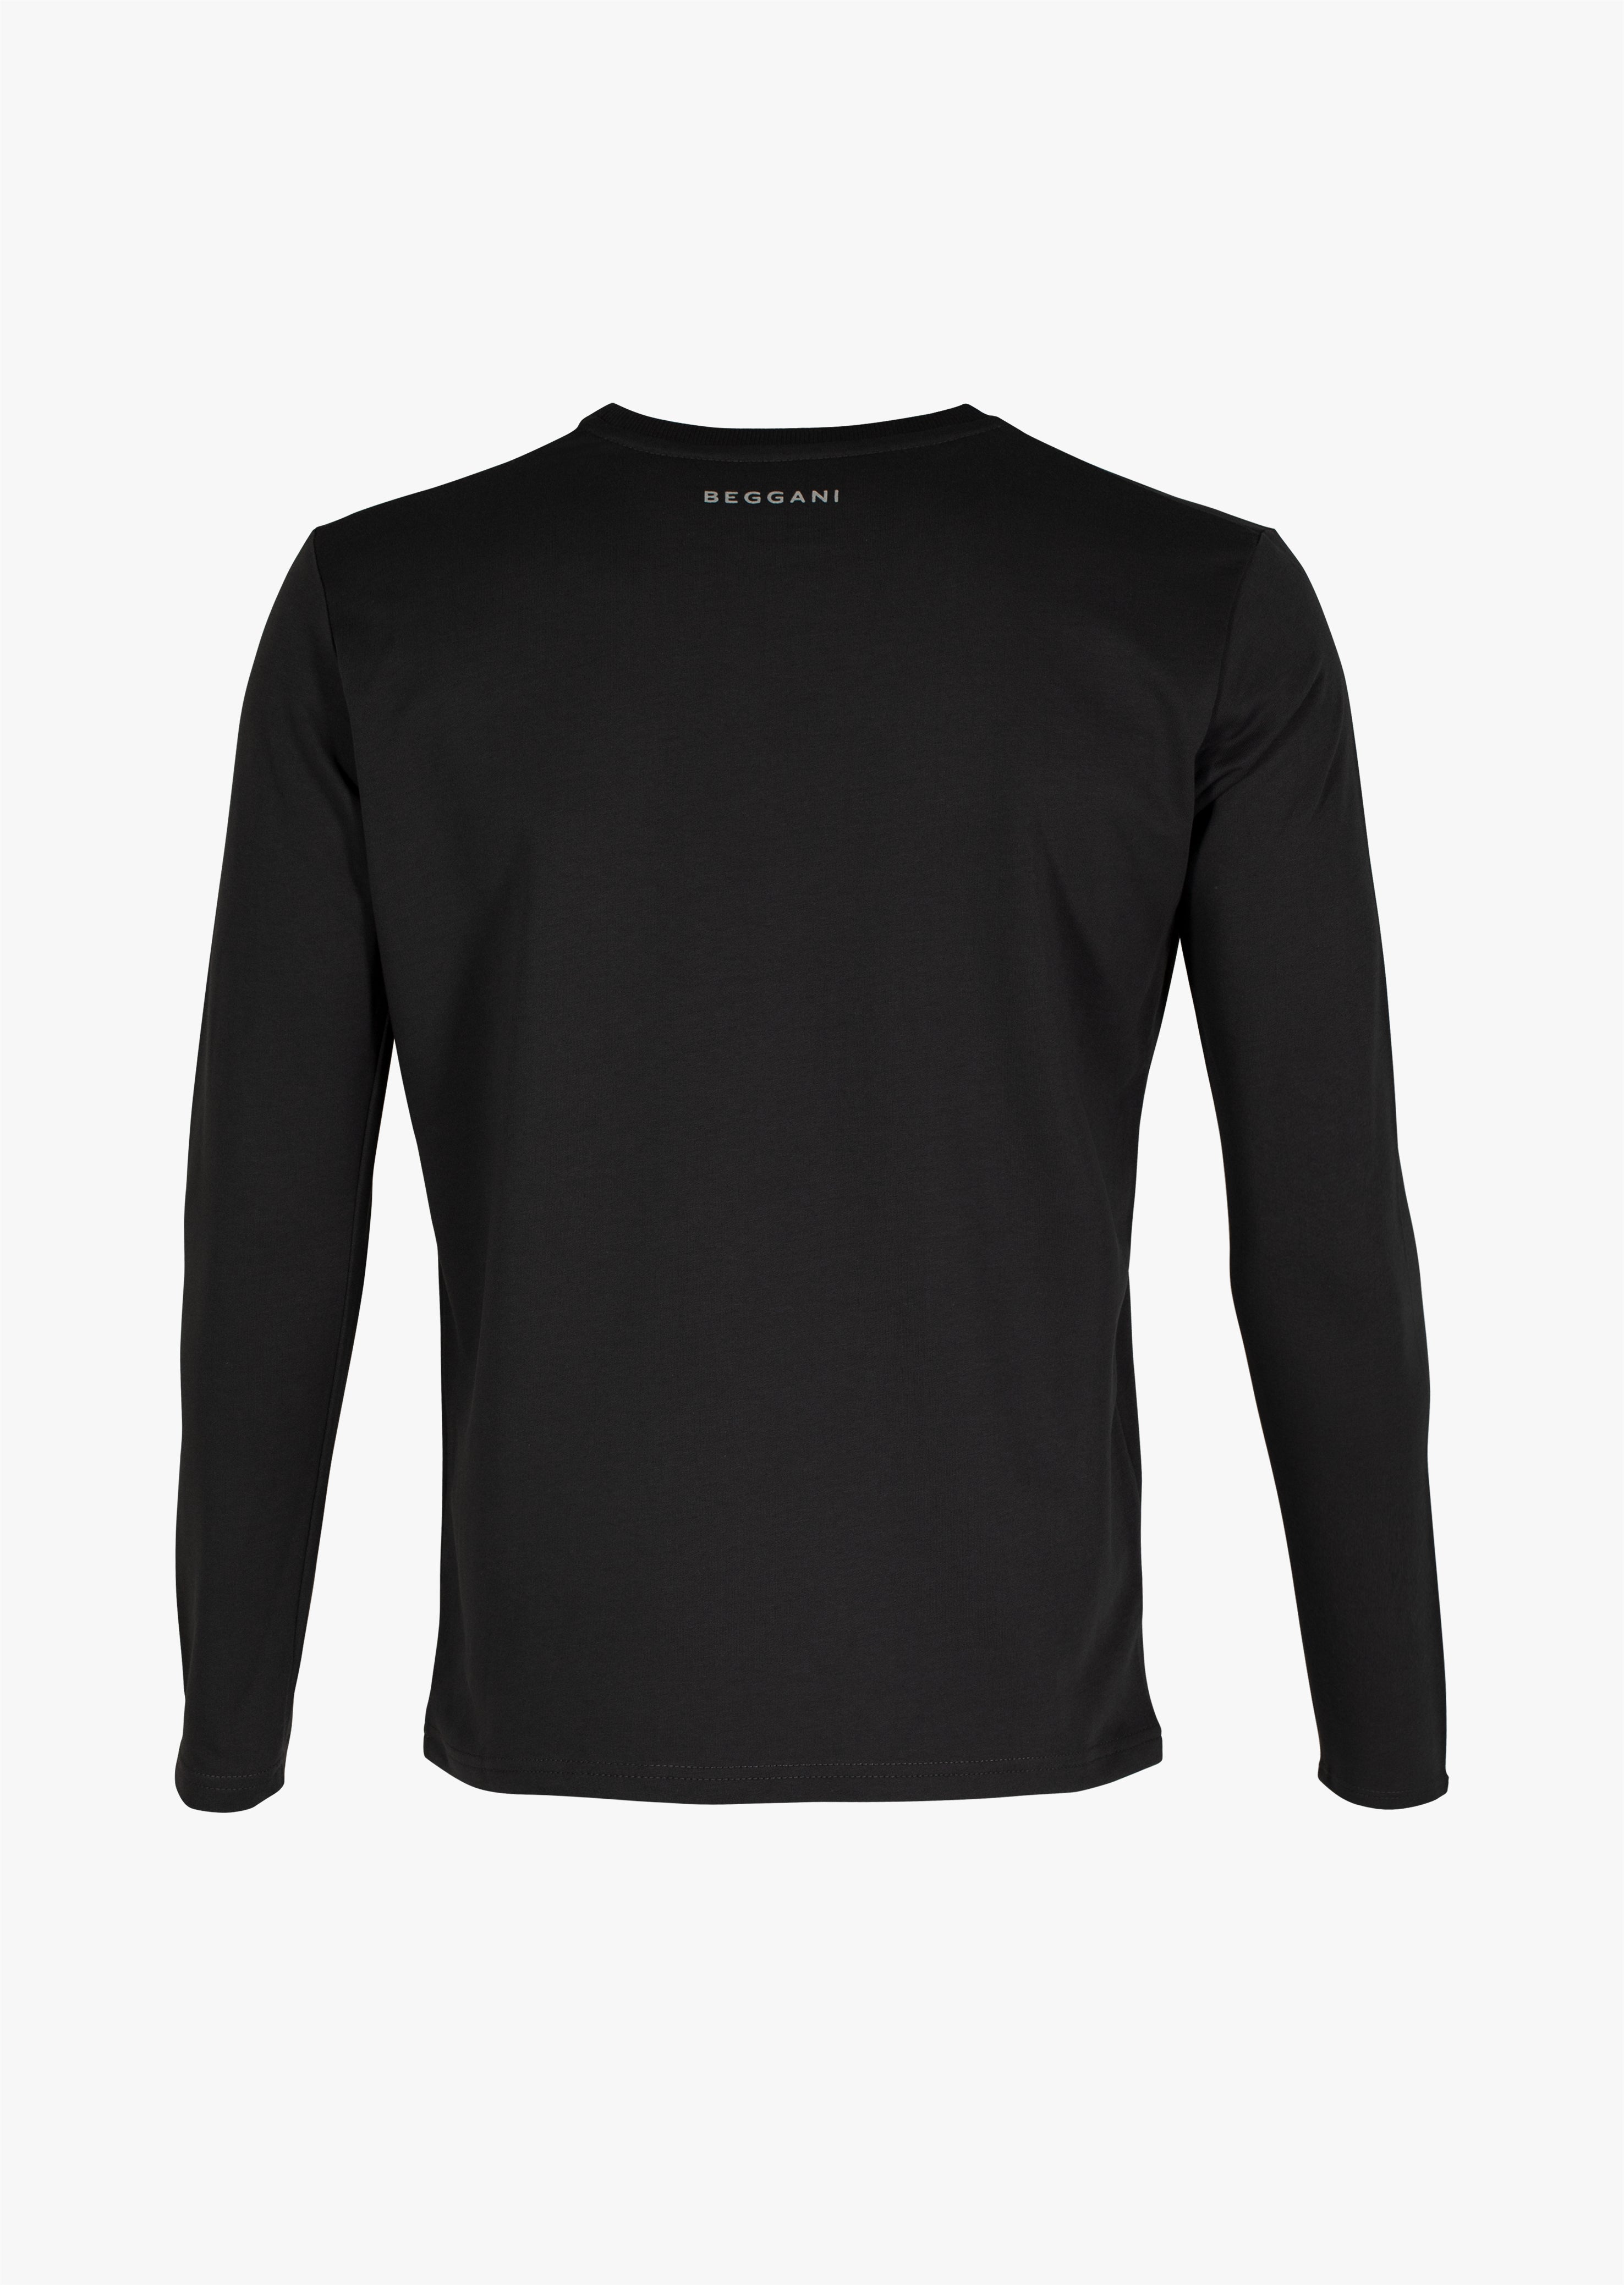 Men's Long-sleeved T-shirt BEGGANI Manchester